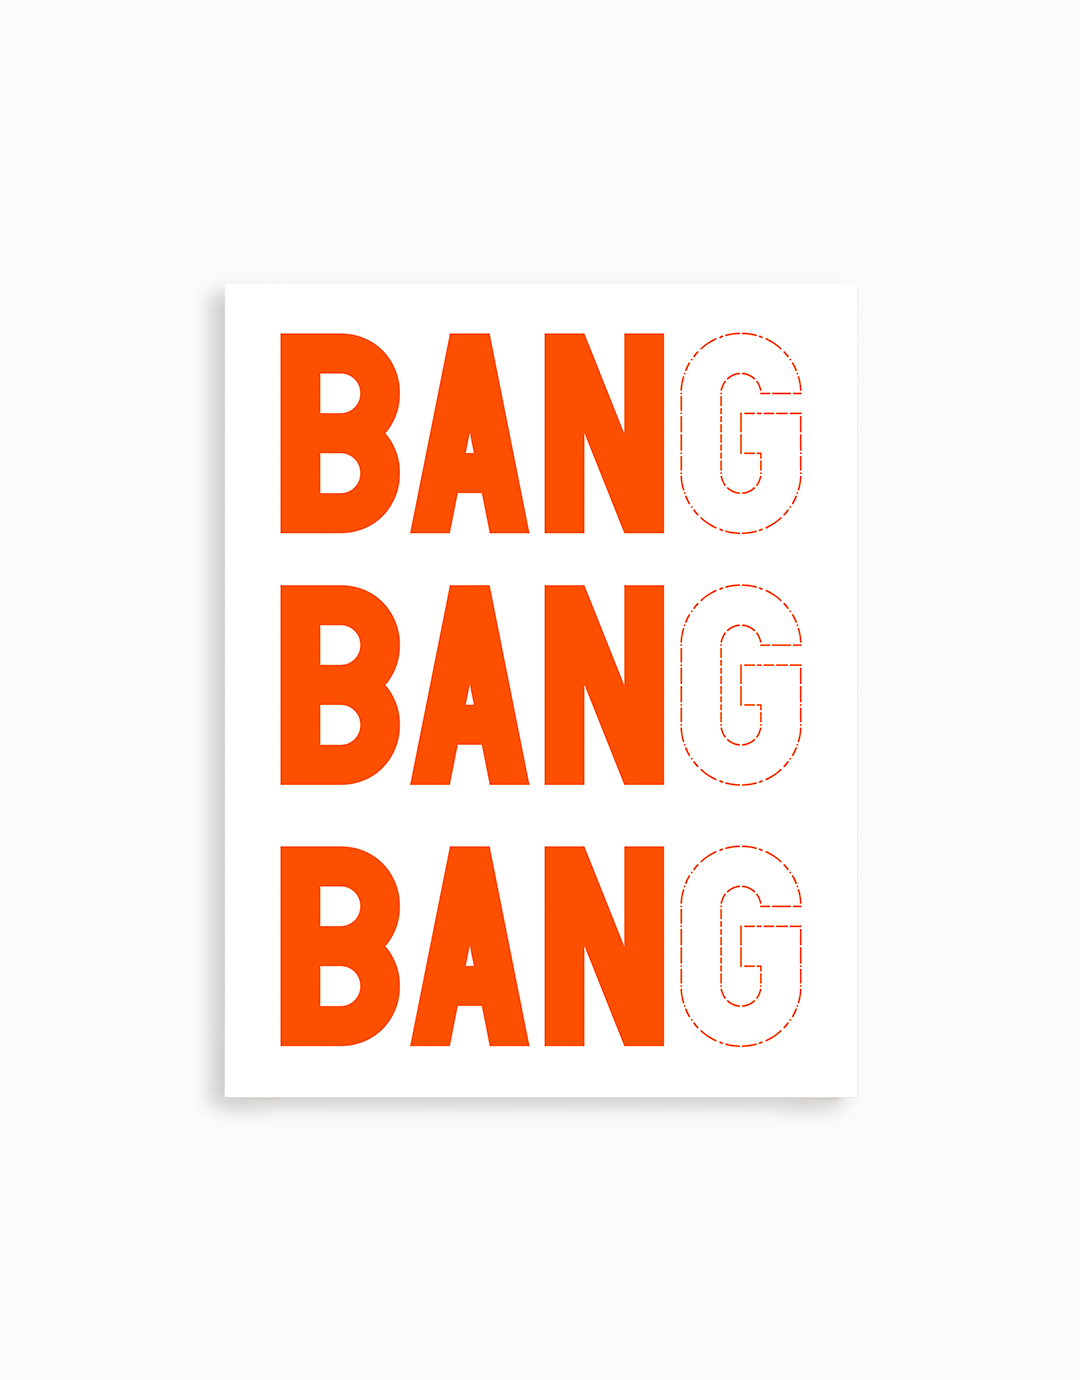 Ban Ban Ban Sticker